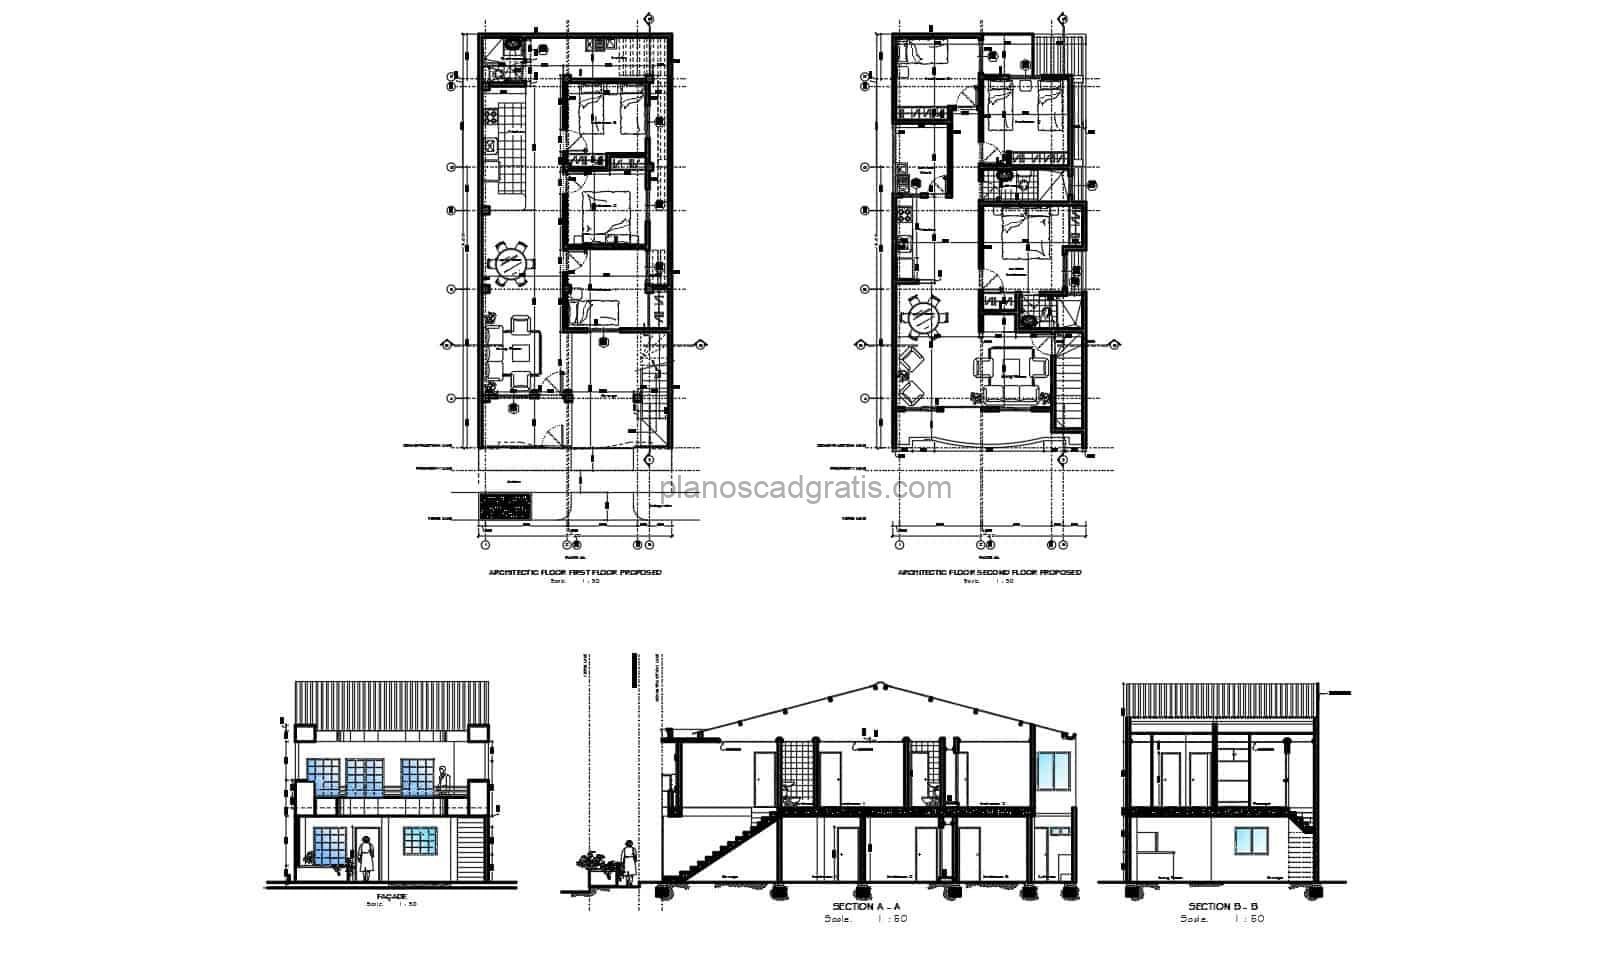 Planos DWG de AutoCAD de casa de dos niveles en niveles individuales con dimensiones y bloques de DWG para descarga gratis, detalles CAD, bloques interiores, planta dimensionada y arquitectónica